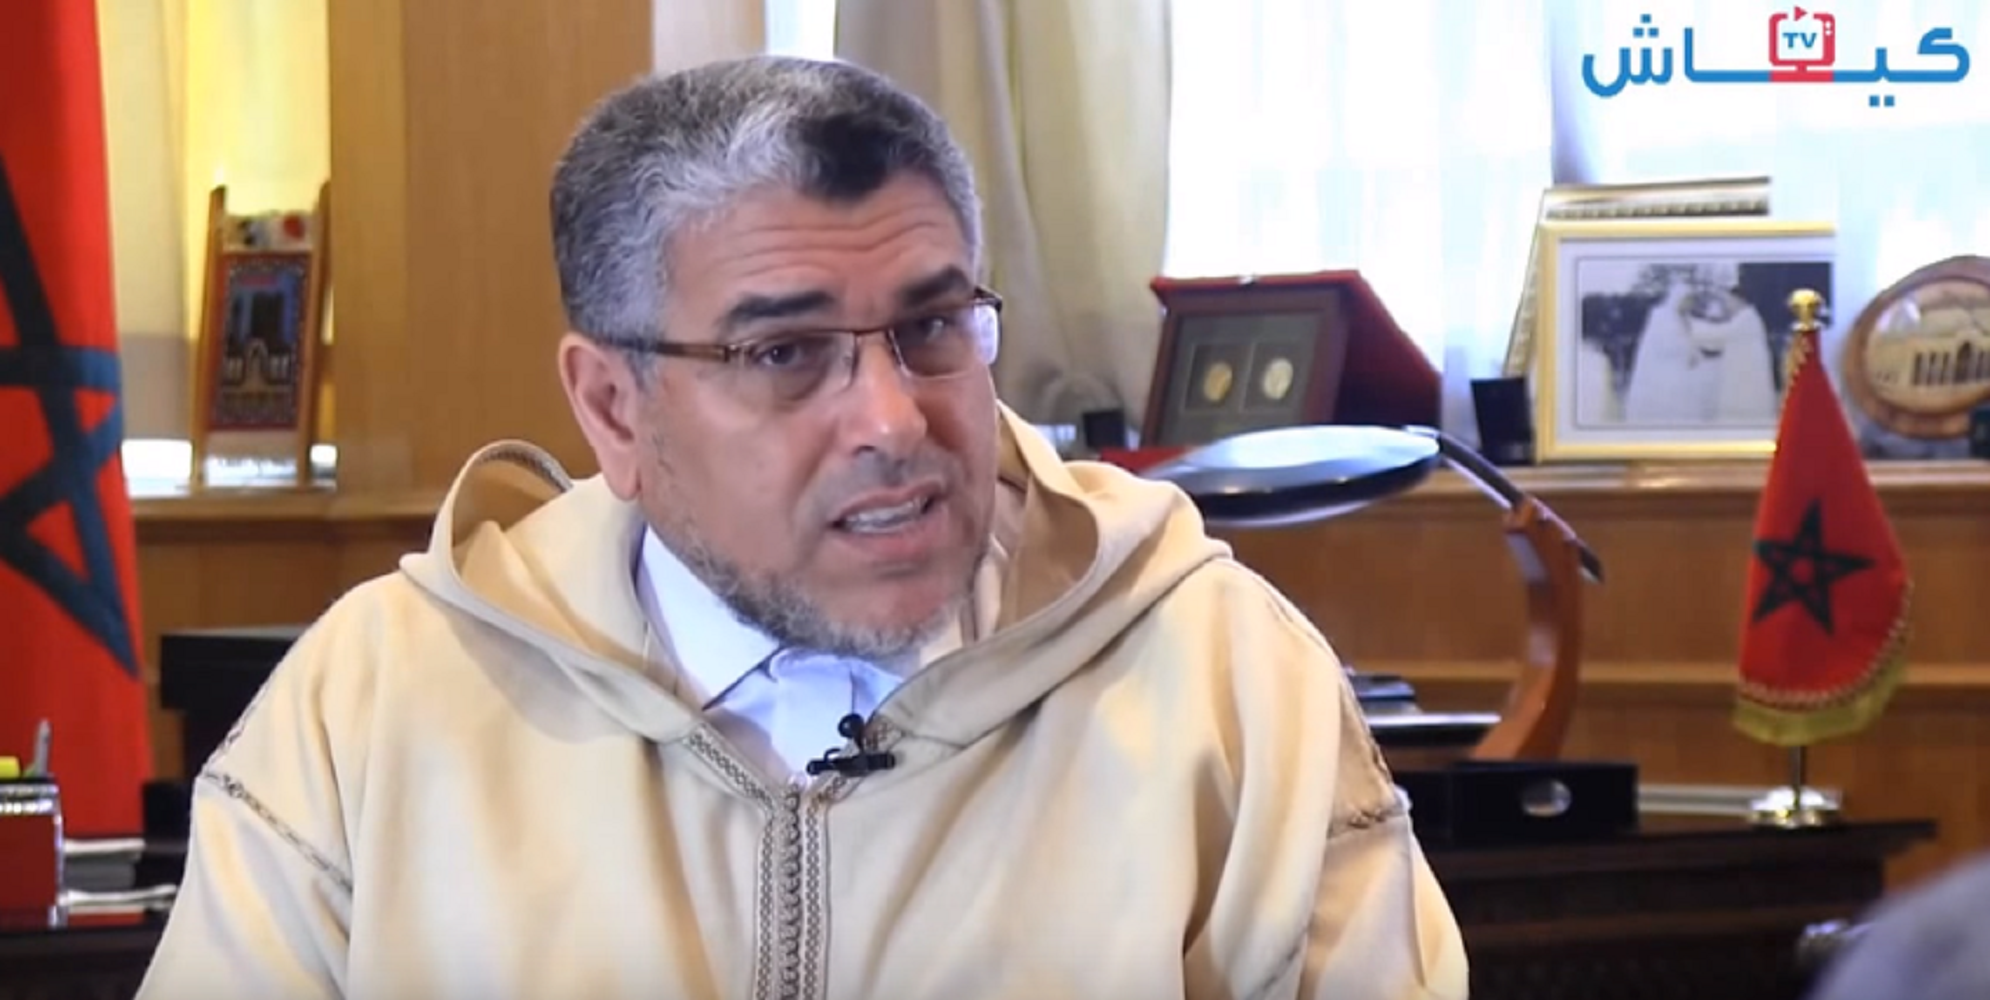 La homosexualidad es "asquerosa", según el ministro de Derechos Humanos marroquí